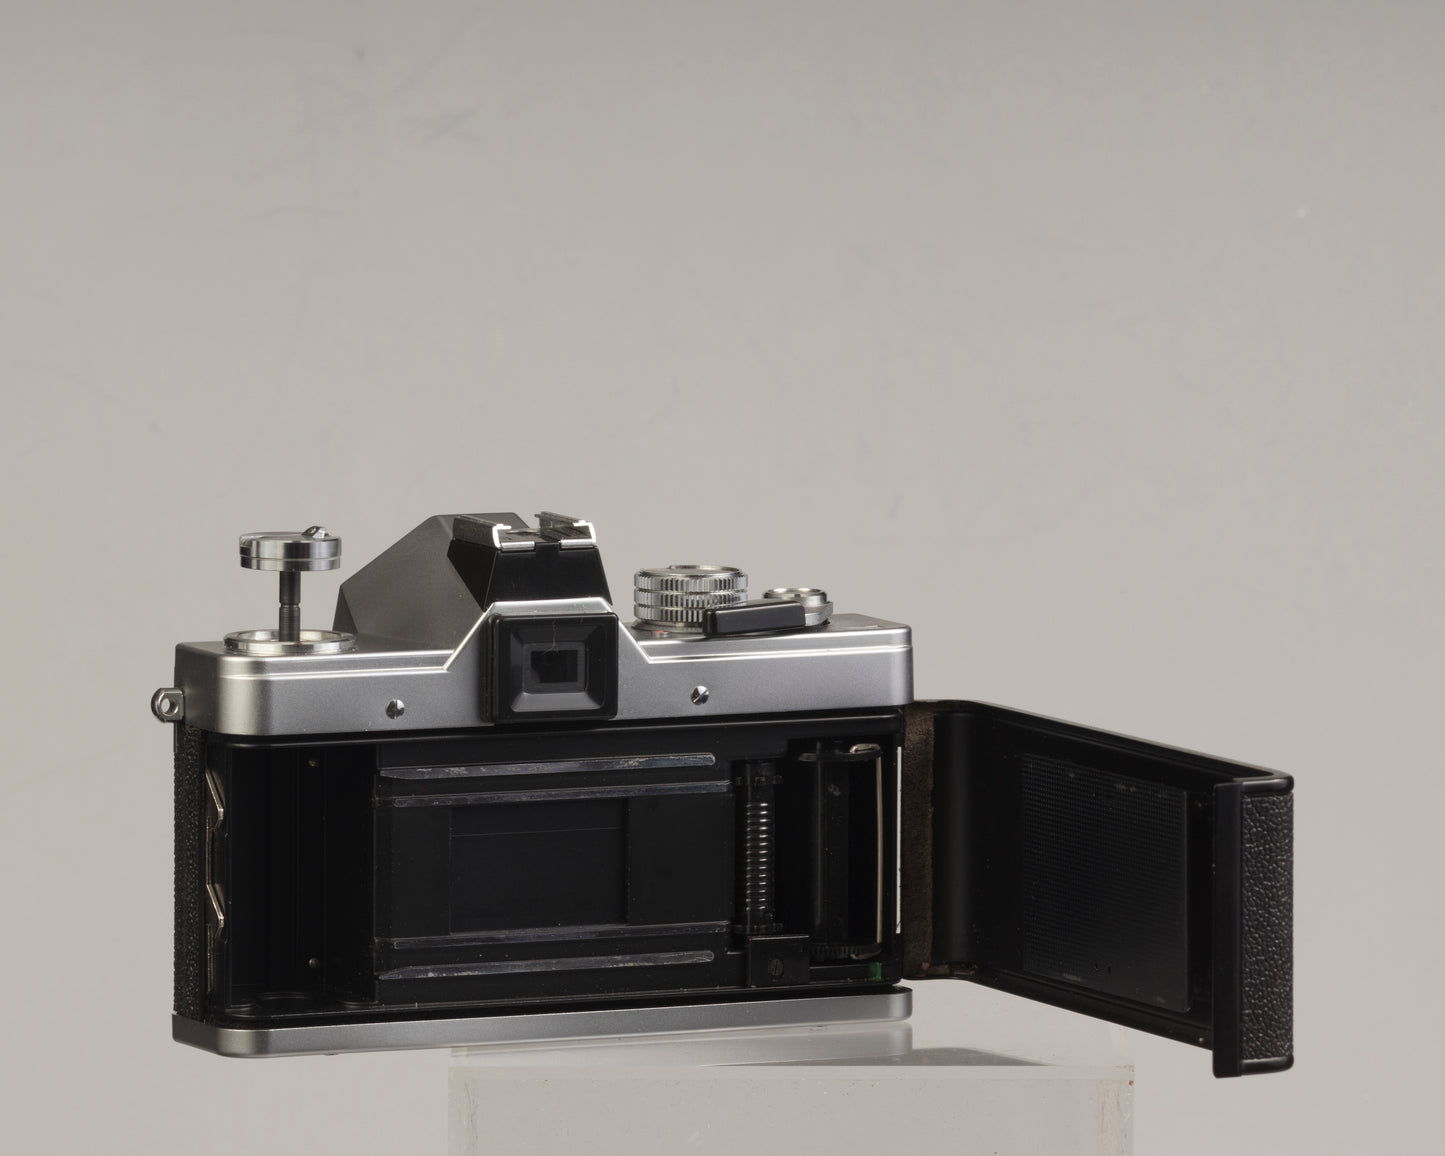 Praktica LTL 3 35mm film SLR camera w/Pentacon 50mm f1.8 lens and original case